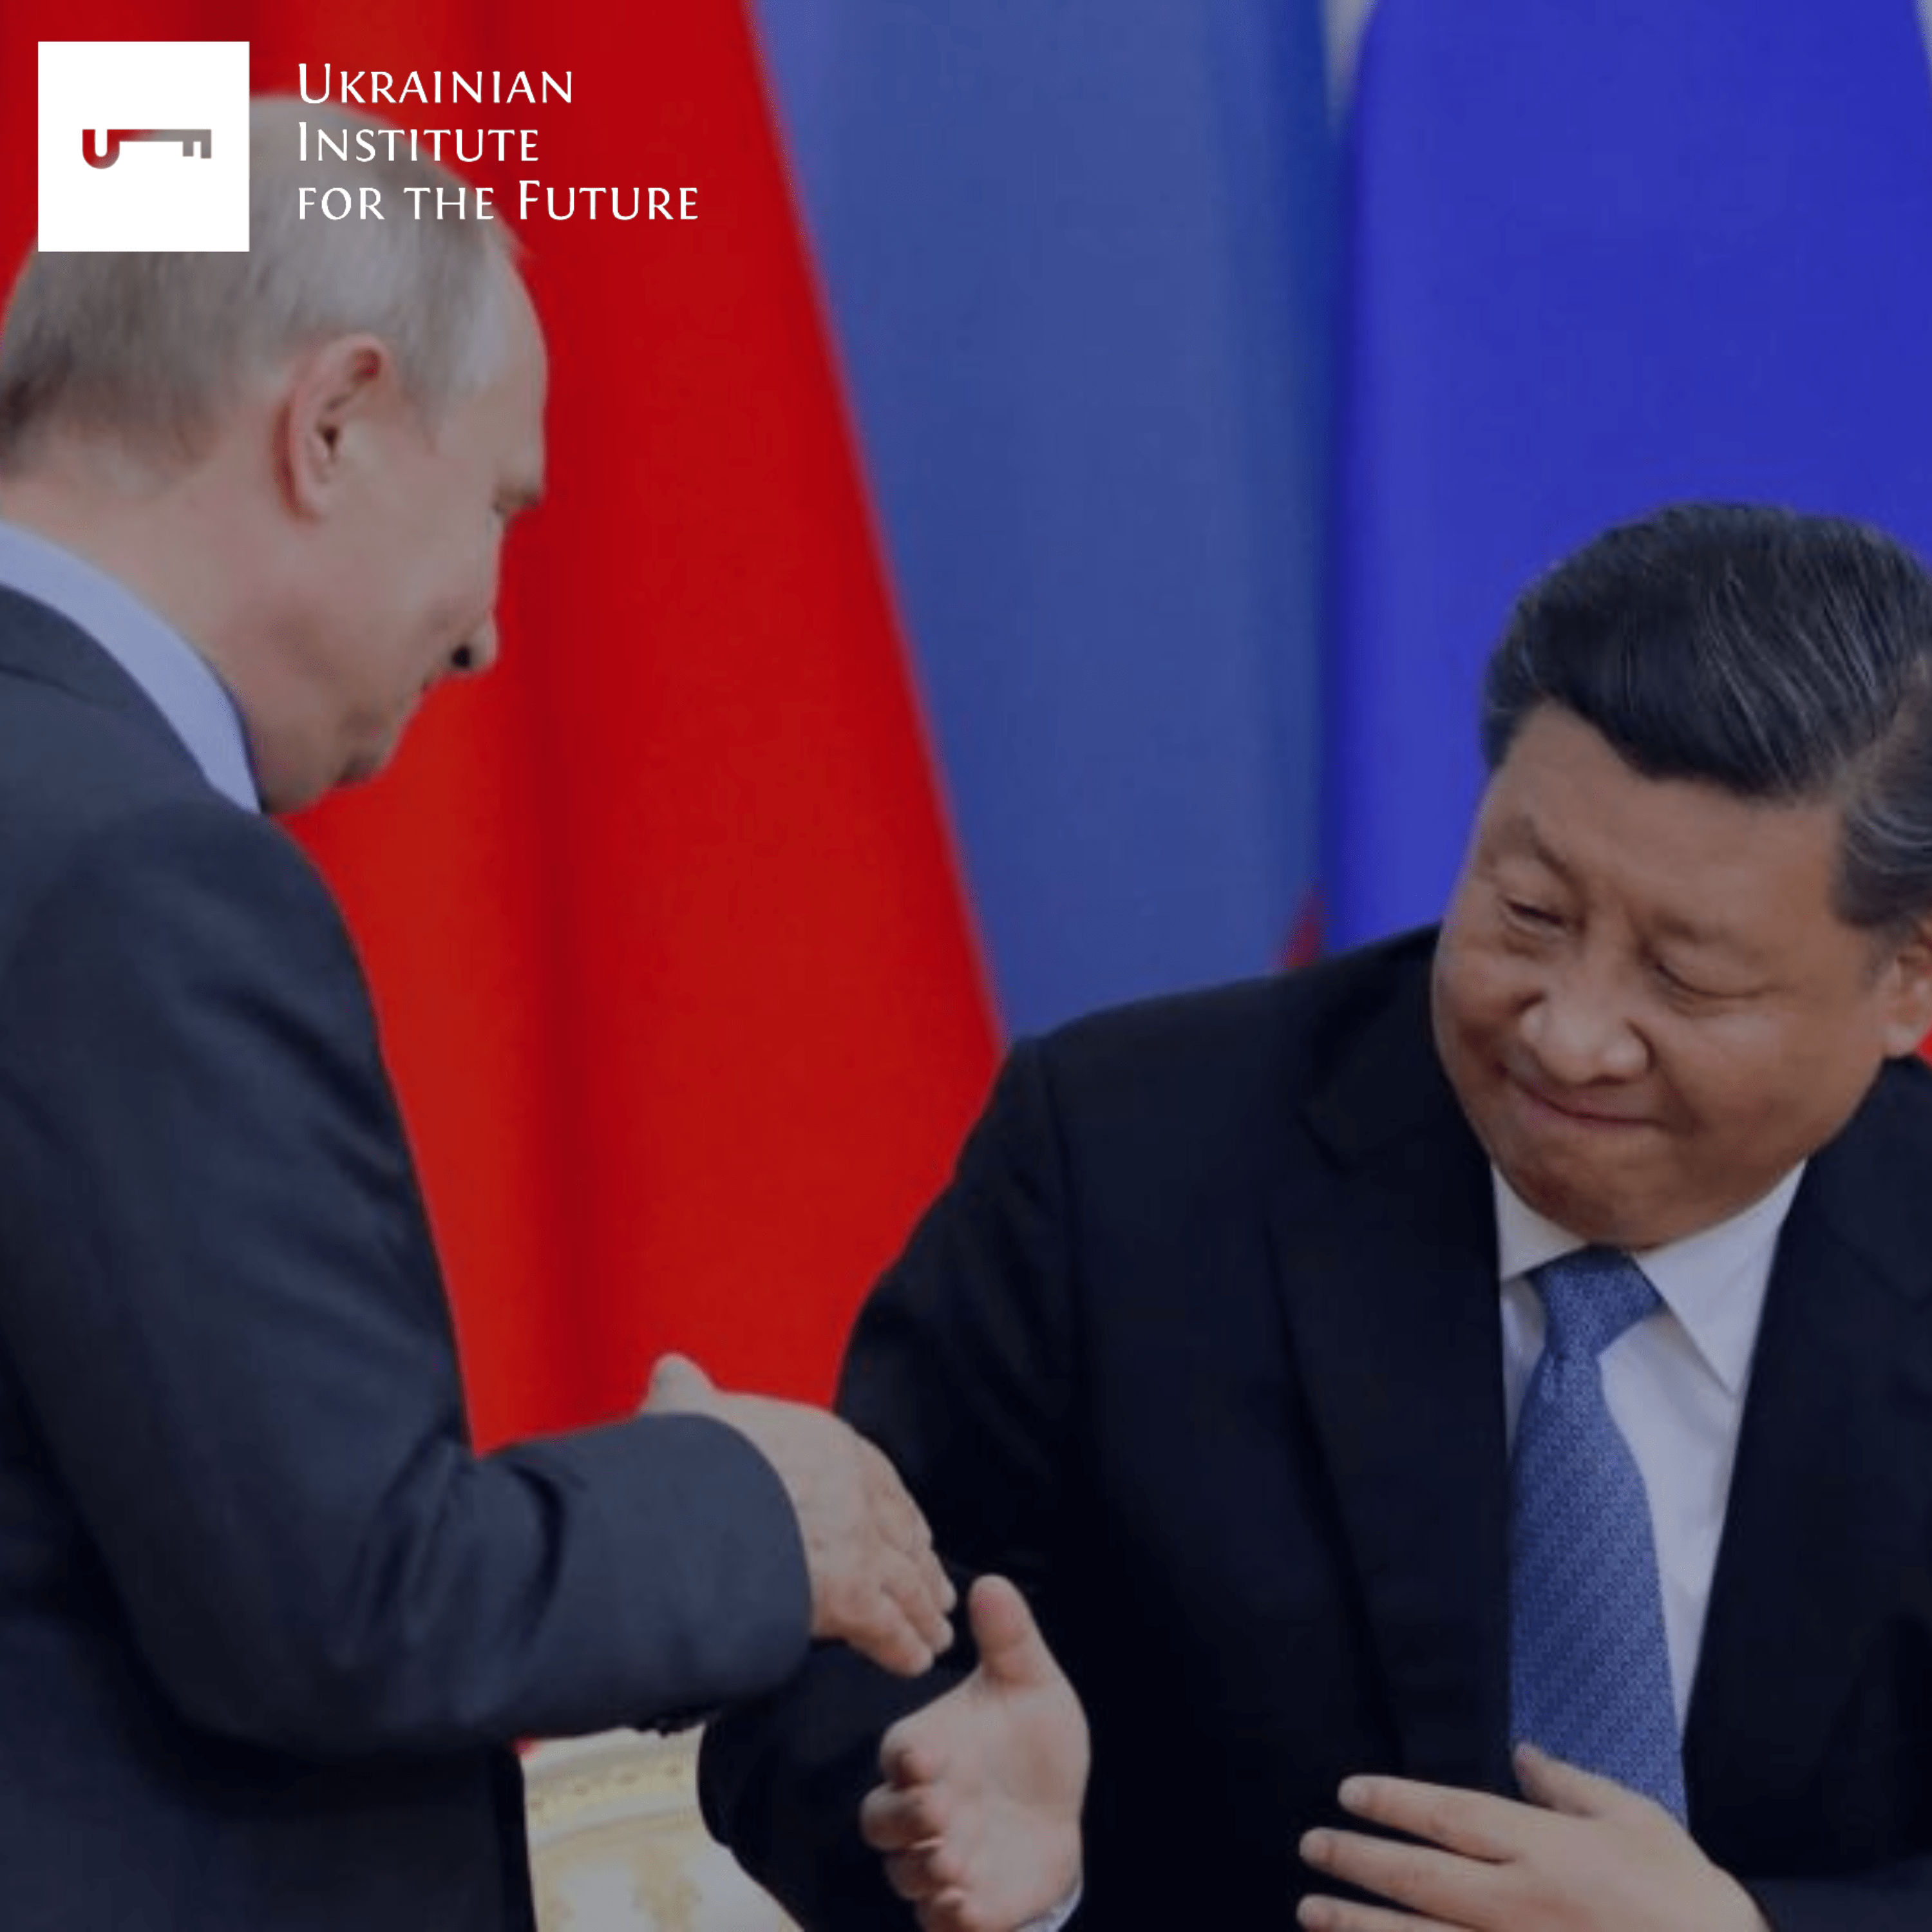 Как российская пропаганда подает дружбу с КНР: лучше быть вассалом Китая, чем США и «не все так однозначно, есть секретные договоренности»